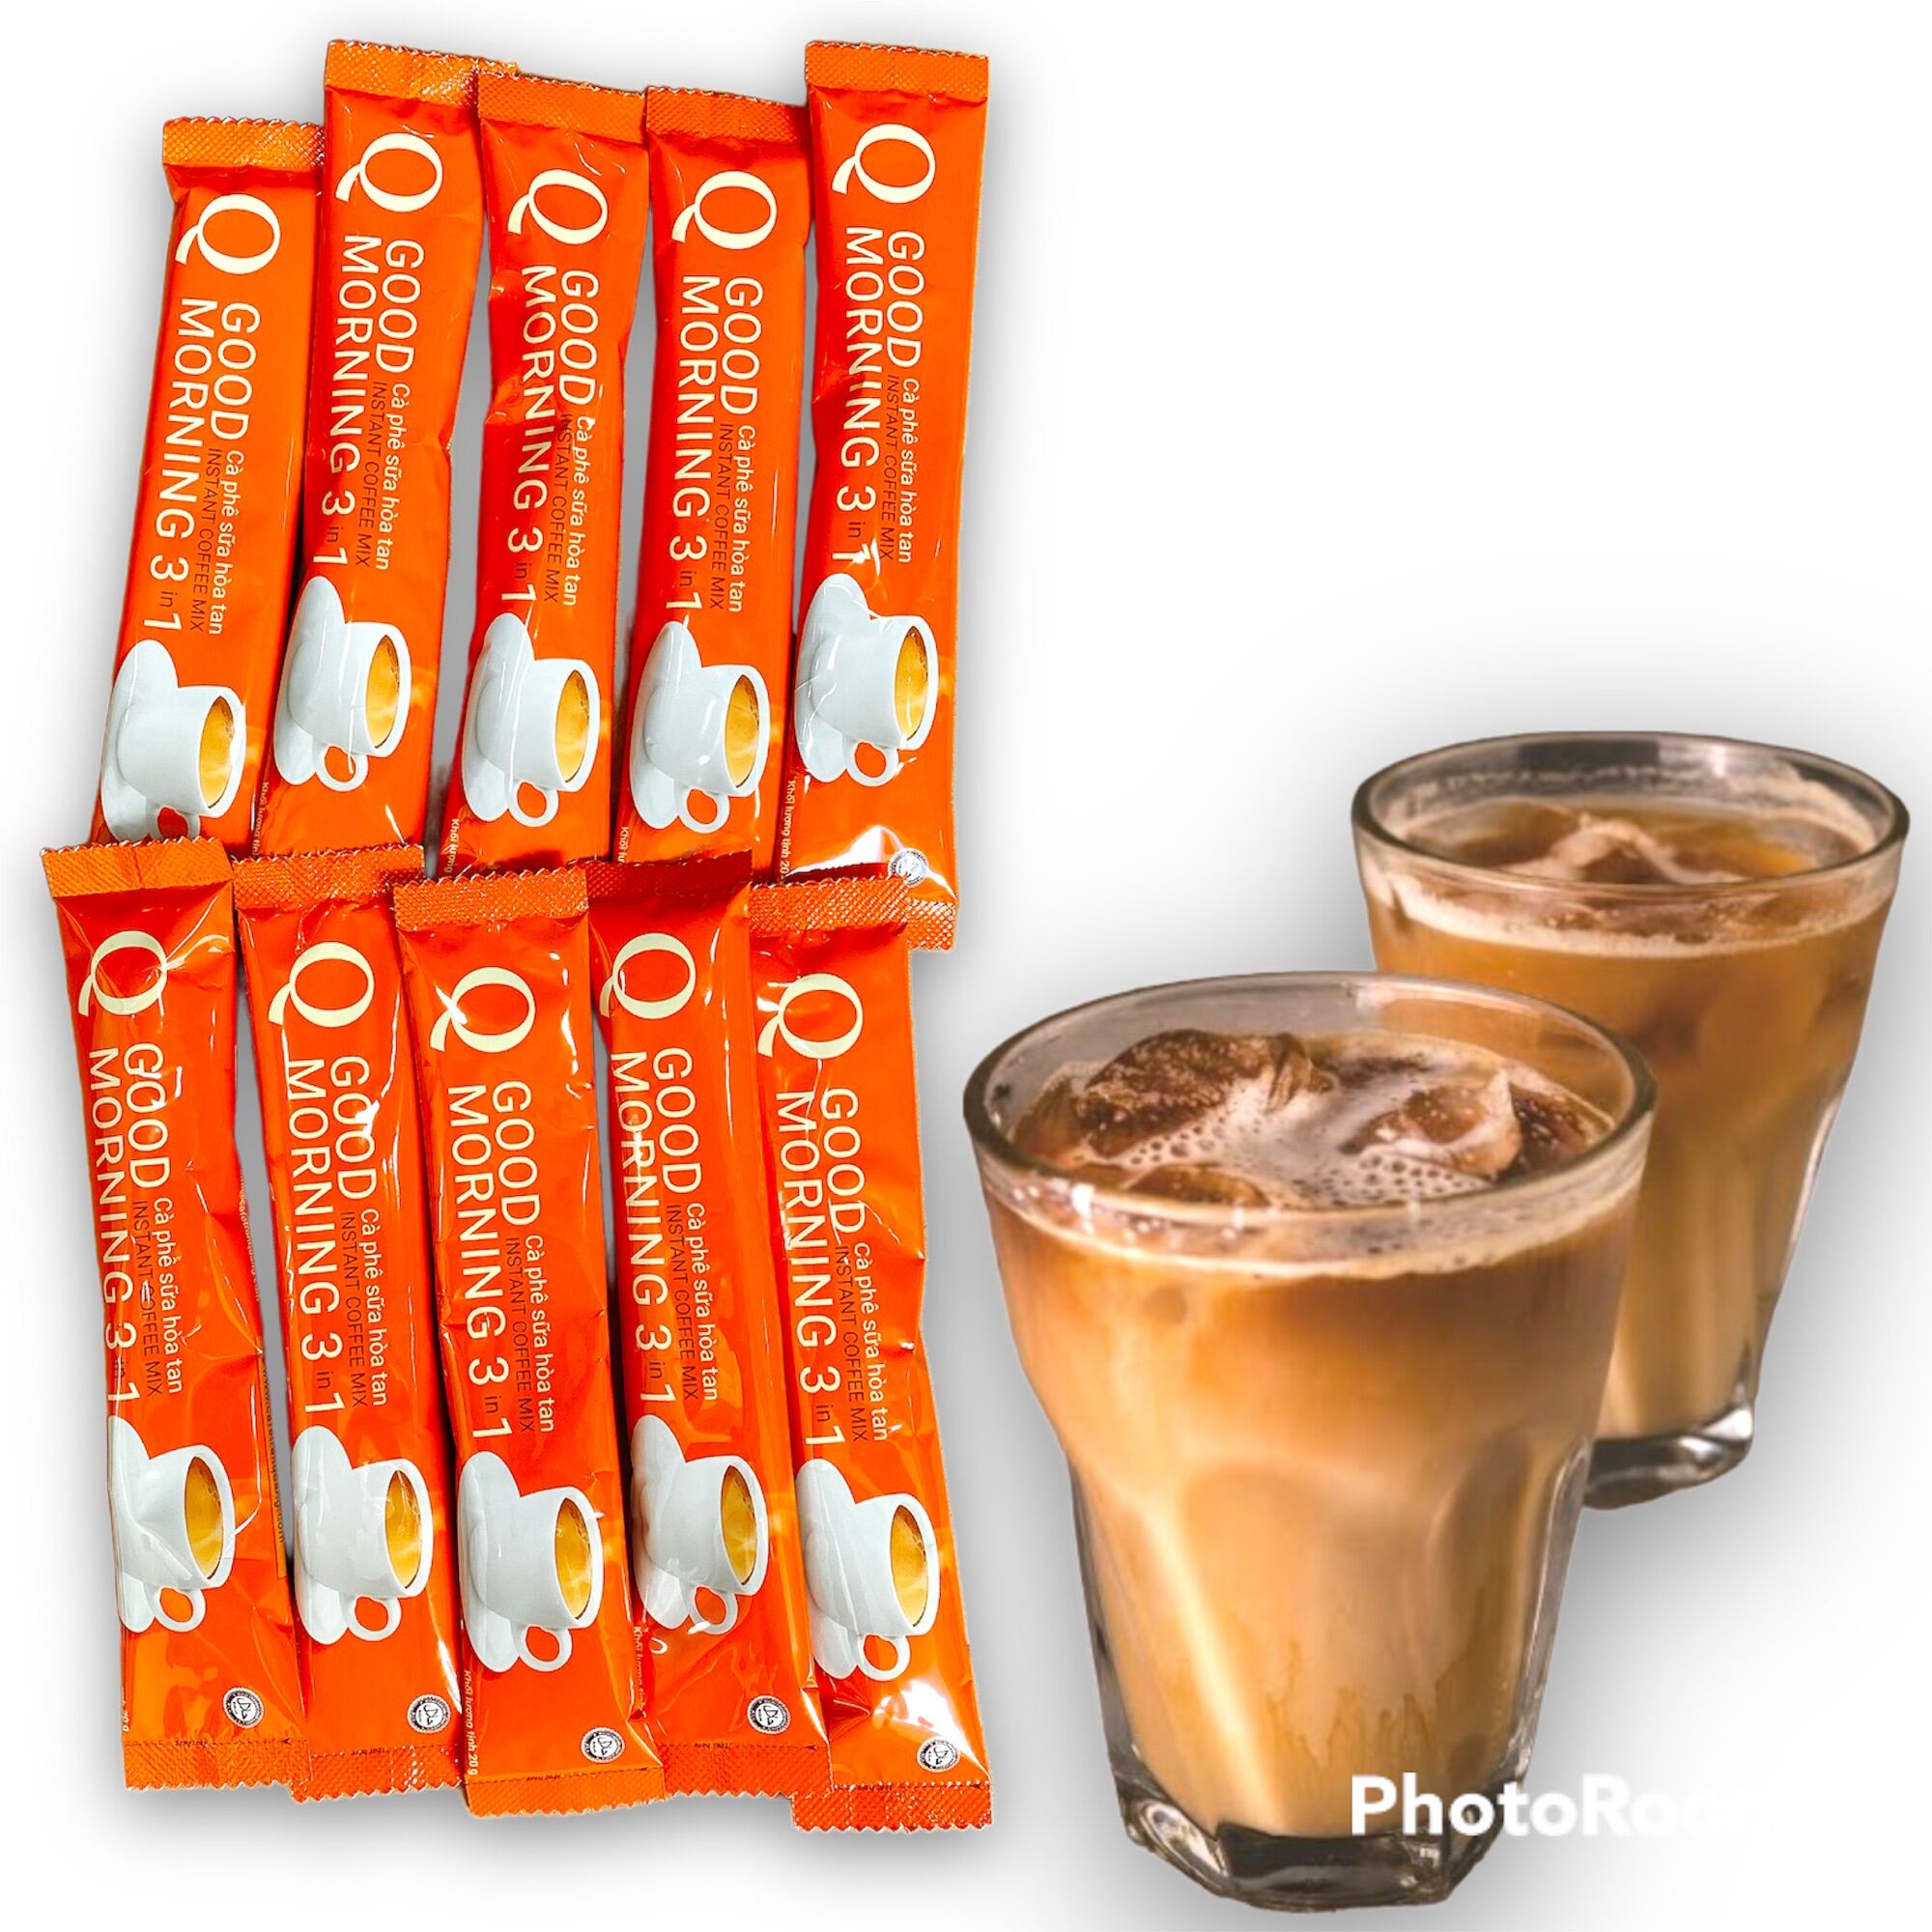 [UỐNG LÀ GHIỀN] Combo 40 gói Cà phê sữa Q Good Morning Trần Quang vị truyền thống (Mỗi gói 20gram) -Có lựa chọn số lượng trước khi thanh toán - (Date mới 12 tháng)-[ 12.12 Hot Deals ]